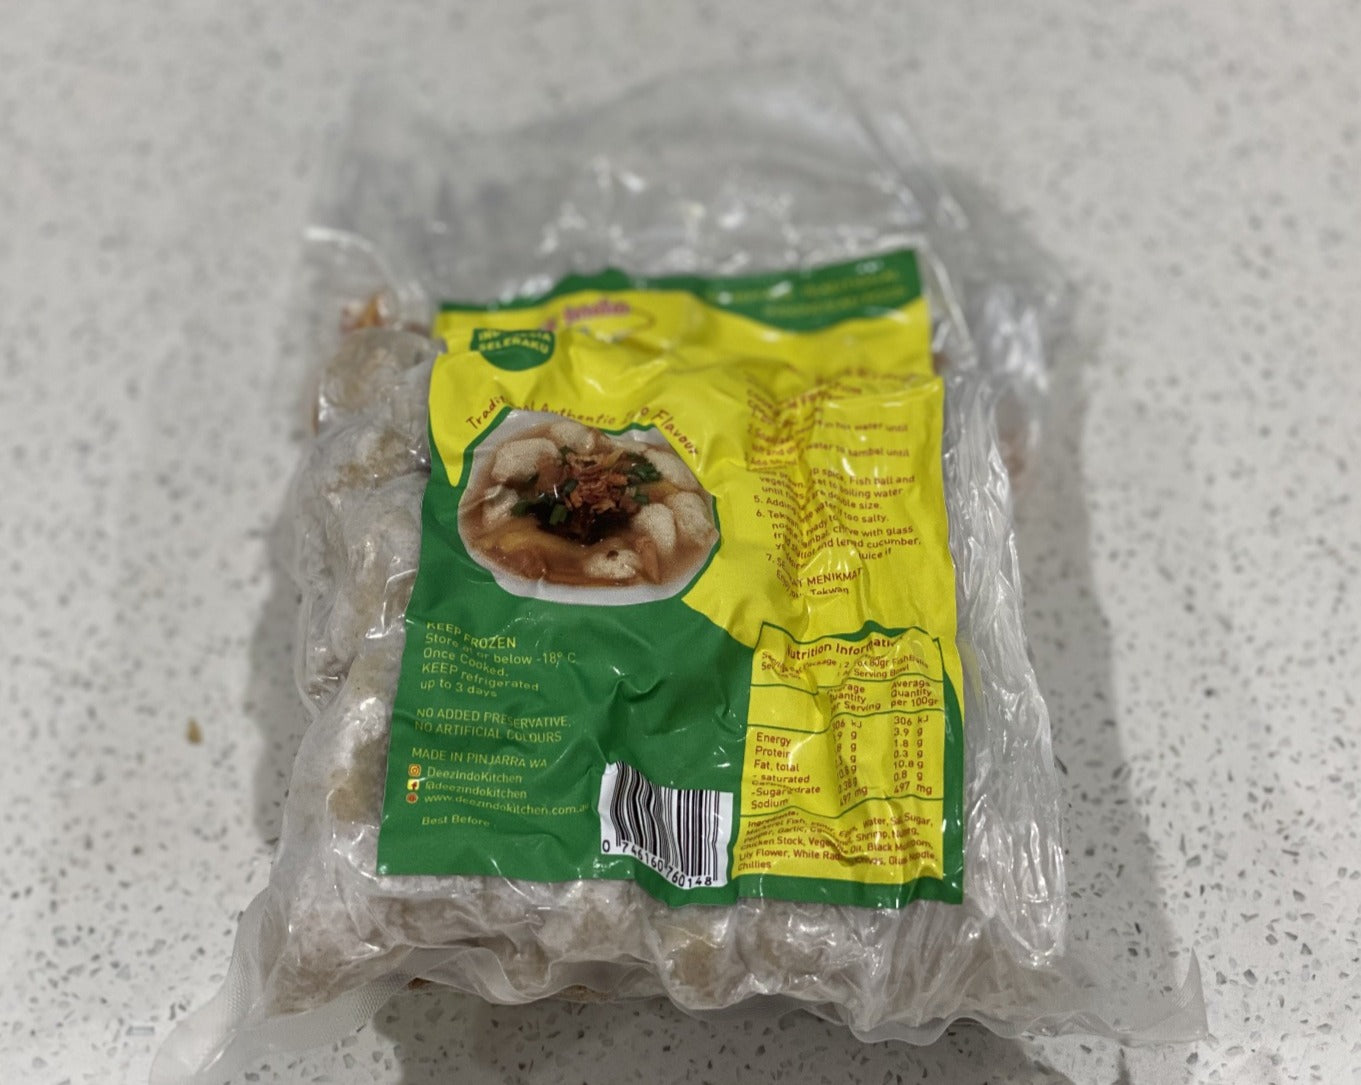 Tekwan Paket Siap Saji (Palembang Fish Ball Soup Packet) - In Stock